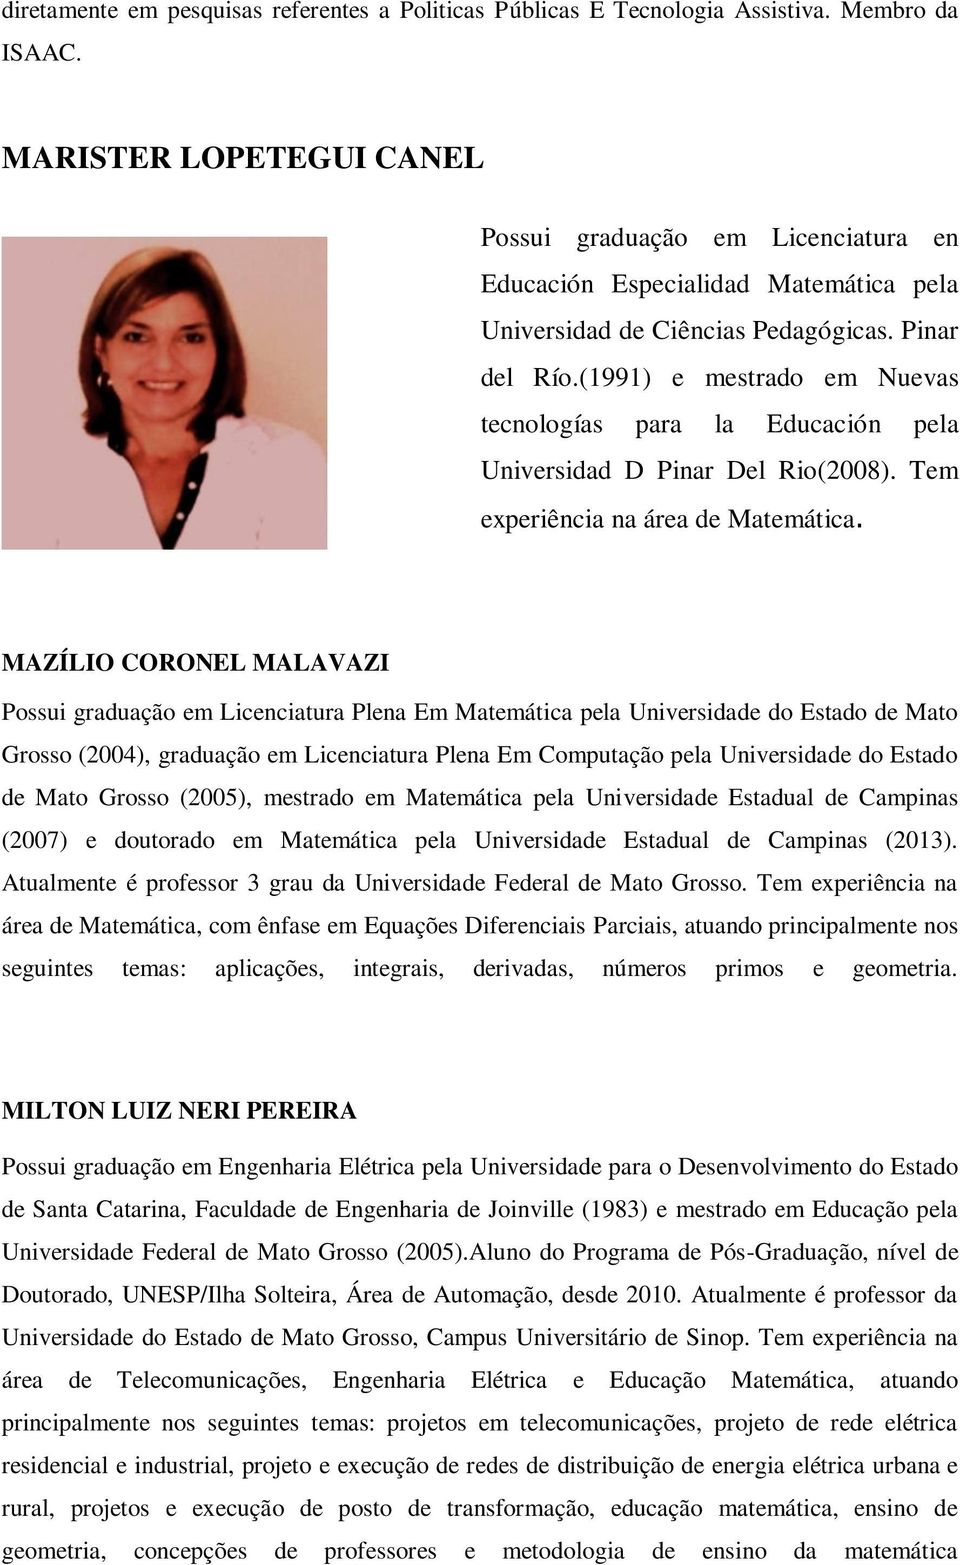 (1991) e mestrado em Nuevas tecnologías para la Educación pela Universidad D Pinar Del Rio(2008). Tem experiência na área de Matemática.